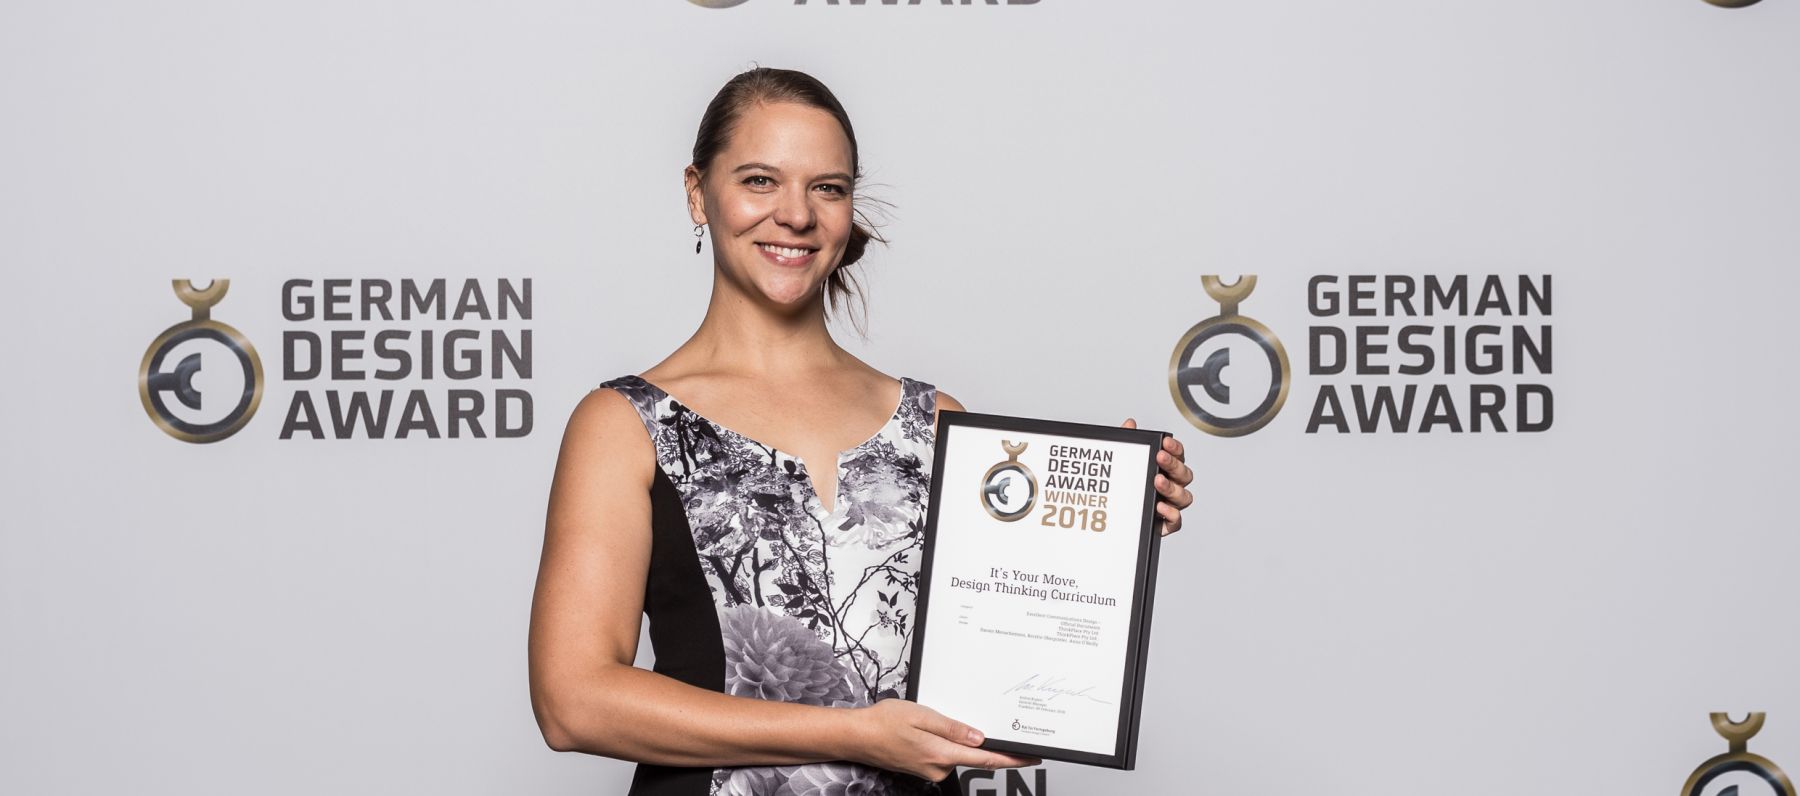 Kerstin Oberprieler with her German Design Award